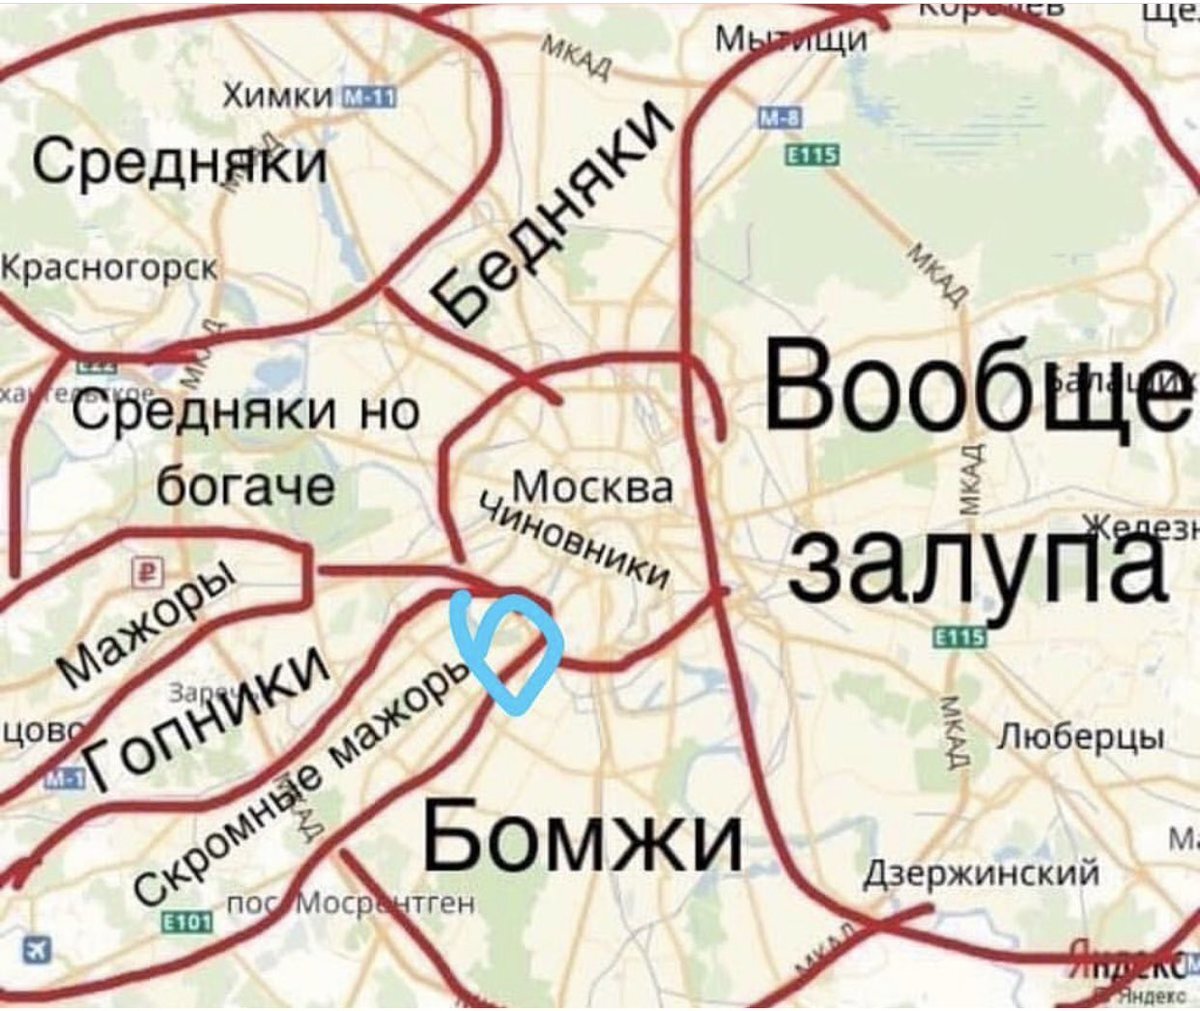 Где найдется все живет. Районы Москвы на карте. Районы Москвы прикол. Смешная карта районов Москвы. Карта Москвы прикол.